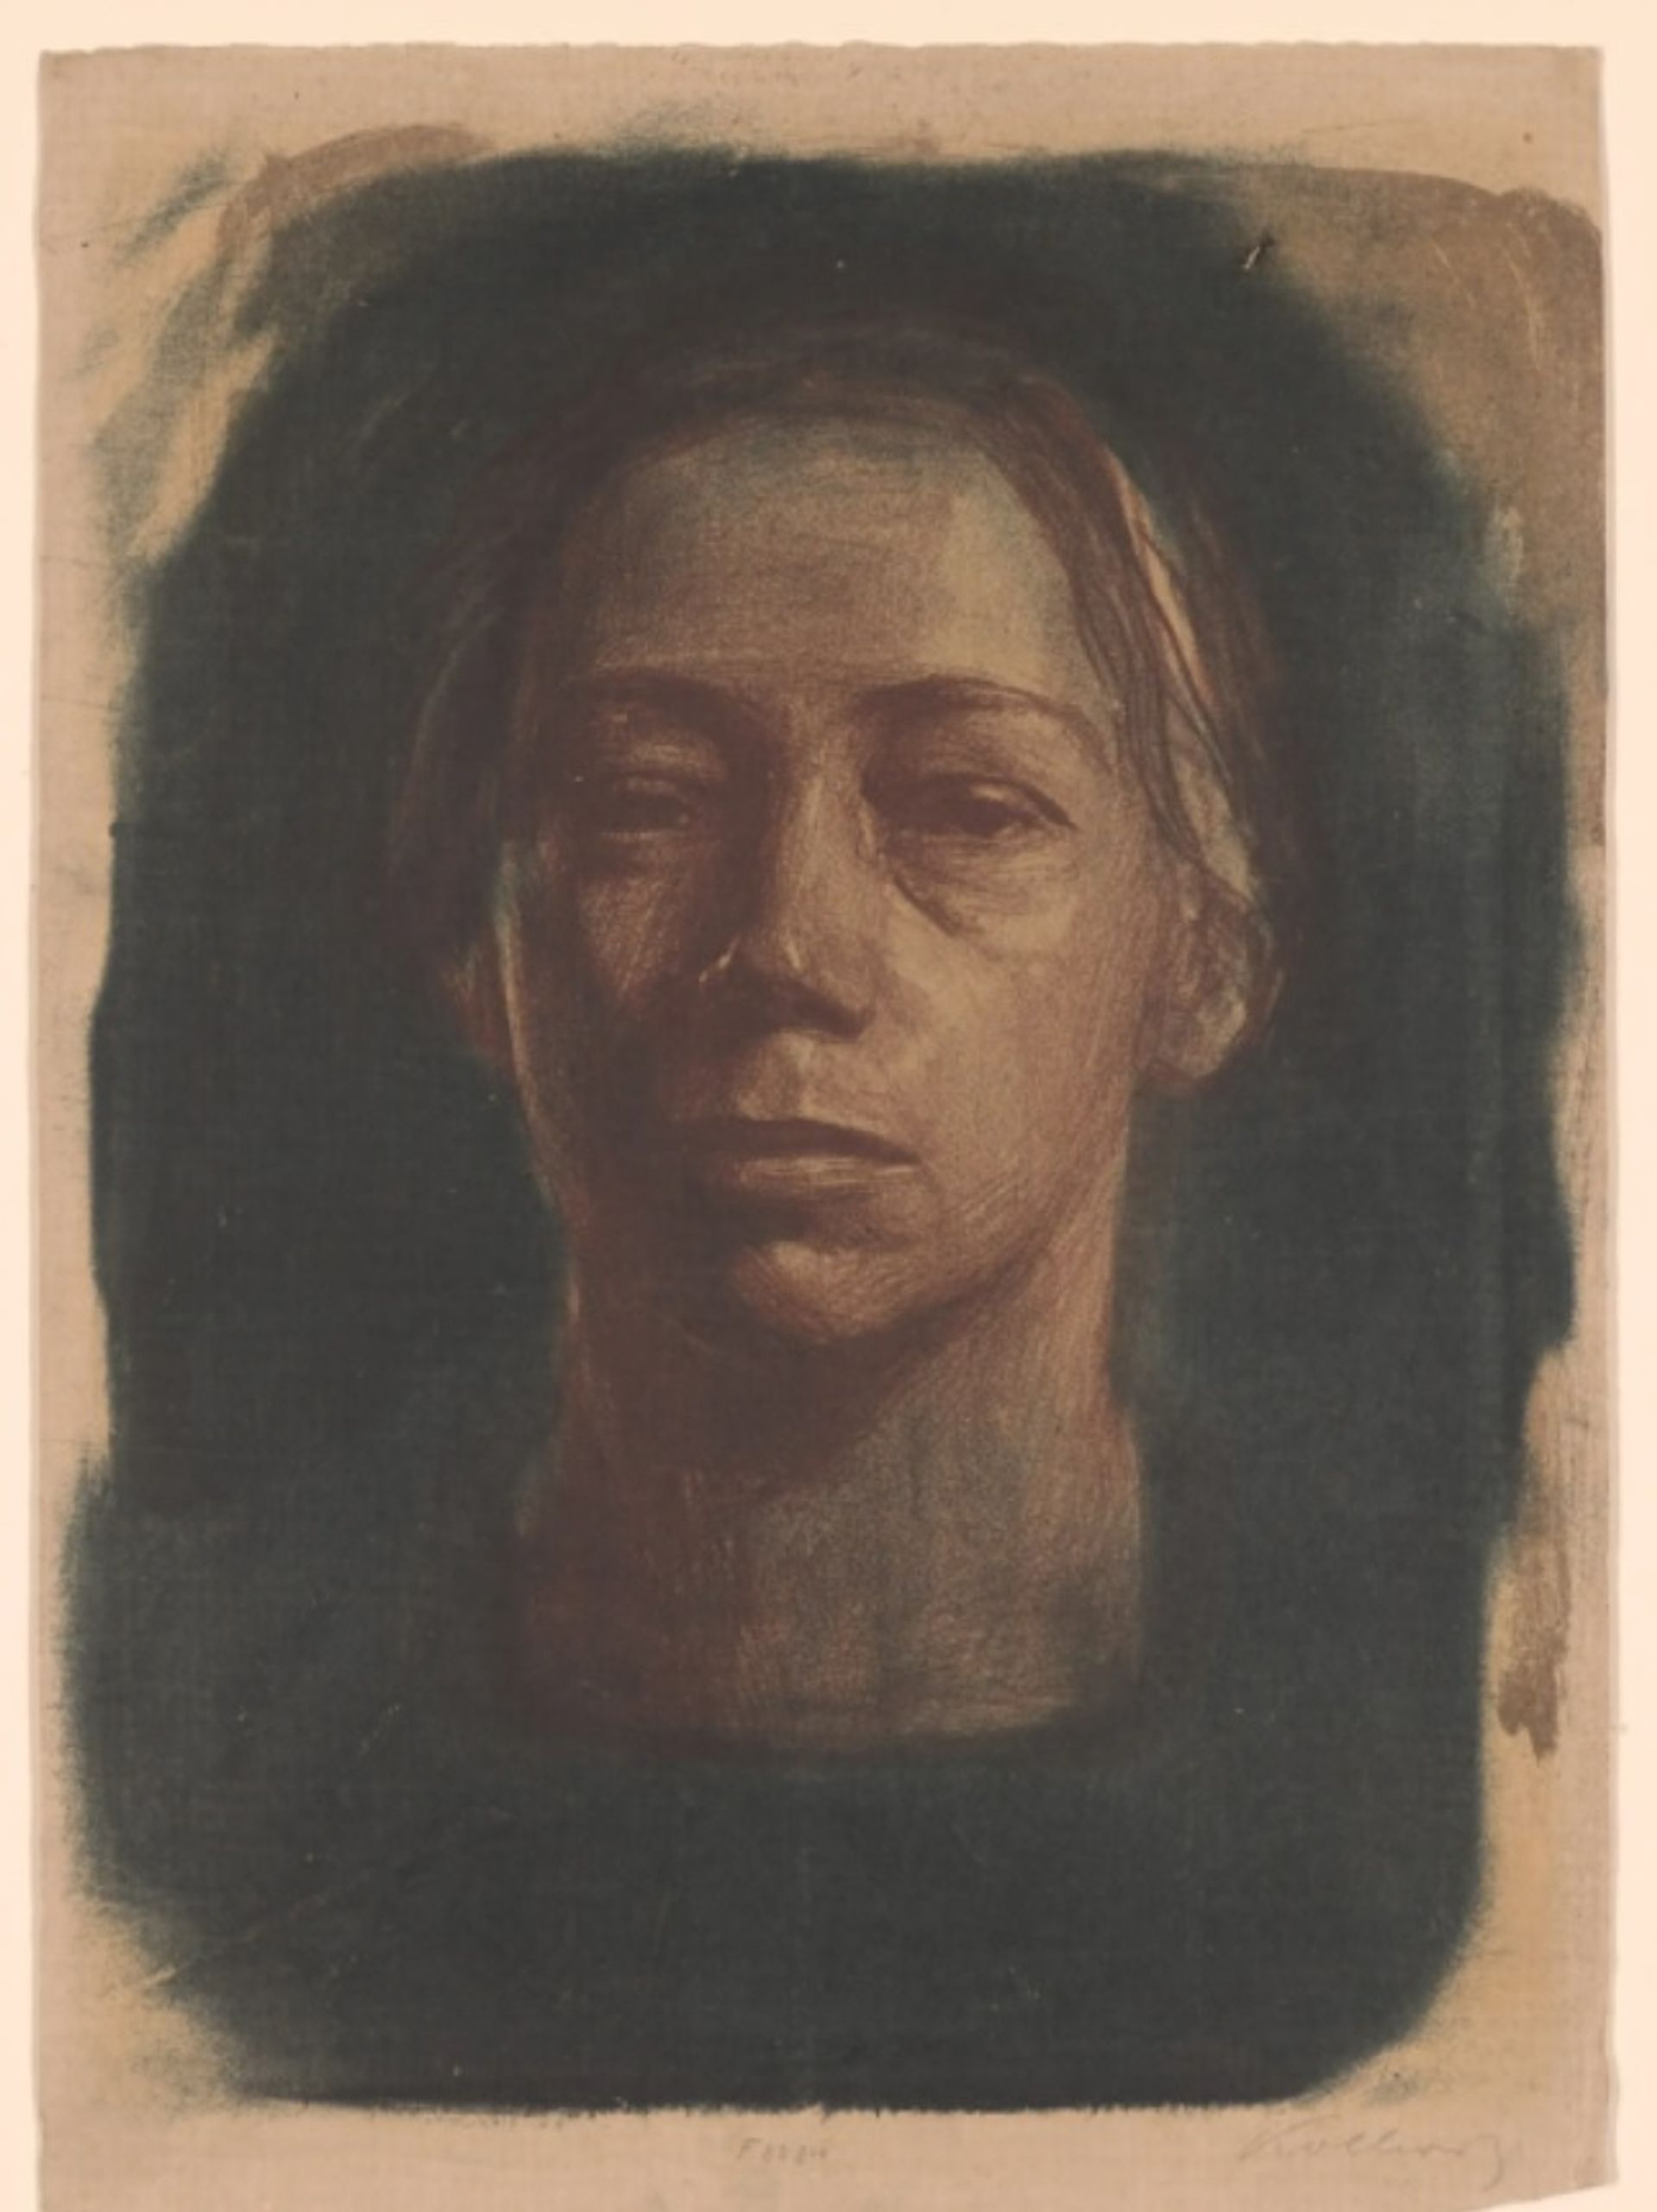 קתה קולביץ, דיוקן עצמי של הפנים(1904). מהדורה אחת מ-12 ידועות.

באדיבות המוזיאון לאמנות מודרנית, ניו יורק. בבעלות משותפת של המוזיאון לאמנות מודרנית, ניו יורק, ו-Neue Galerie, ניו יורק.